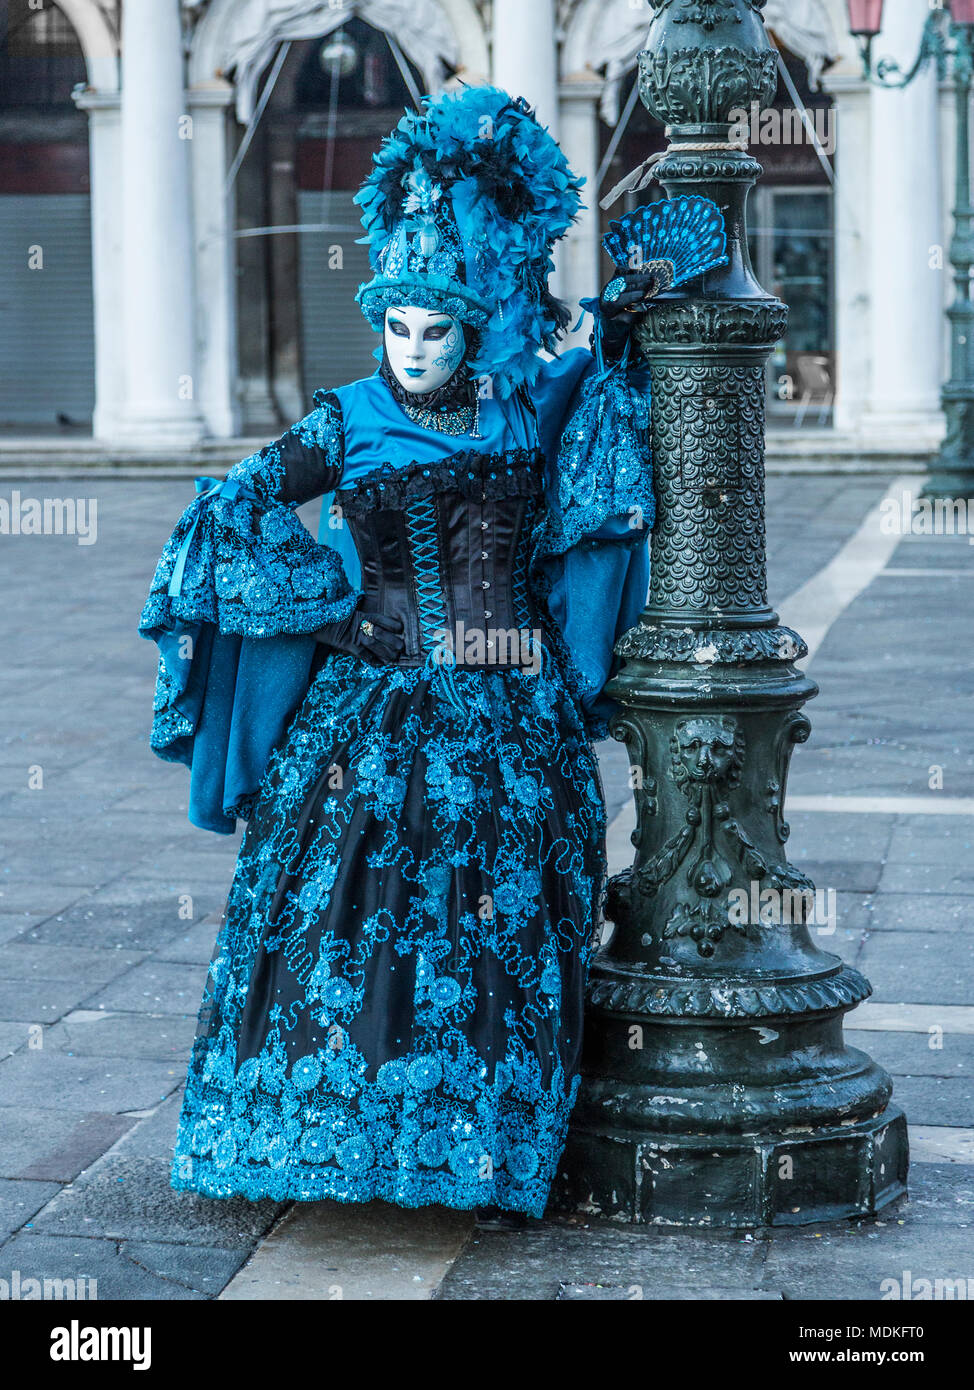 Carnaval de Venise, costumes, masques, bal masqué, Février, Piazza San Marco, la Place St Marc Banque D'Images